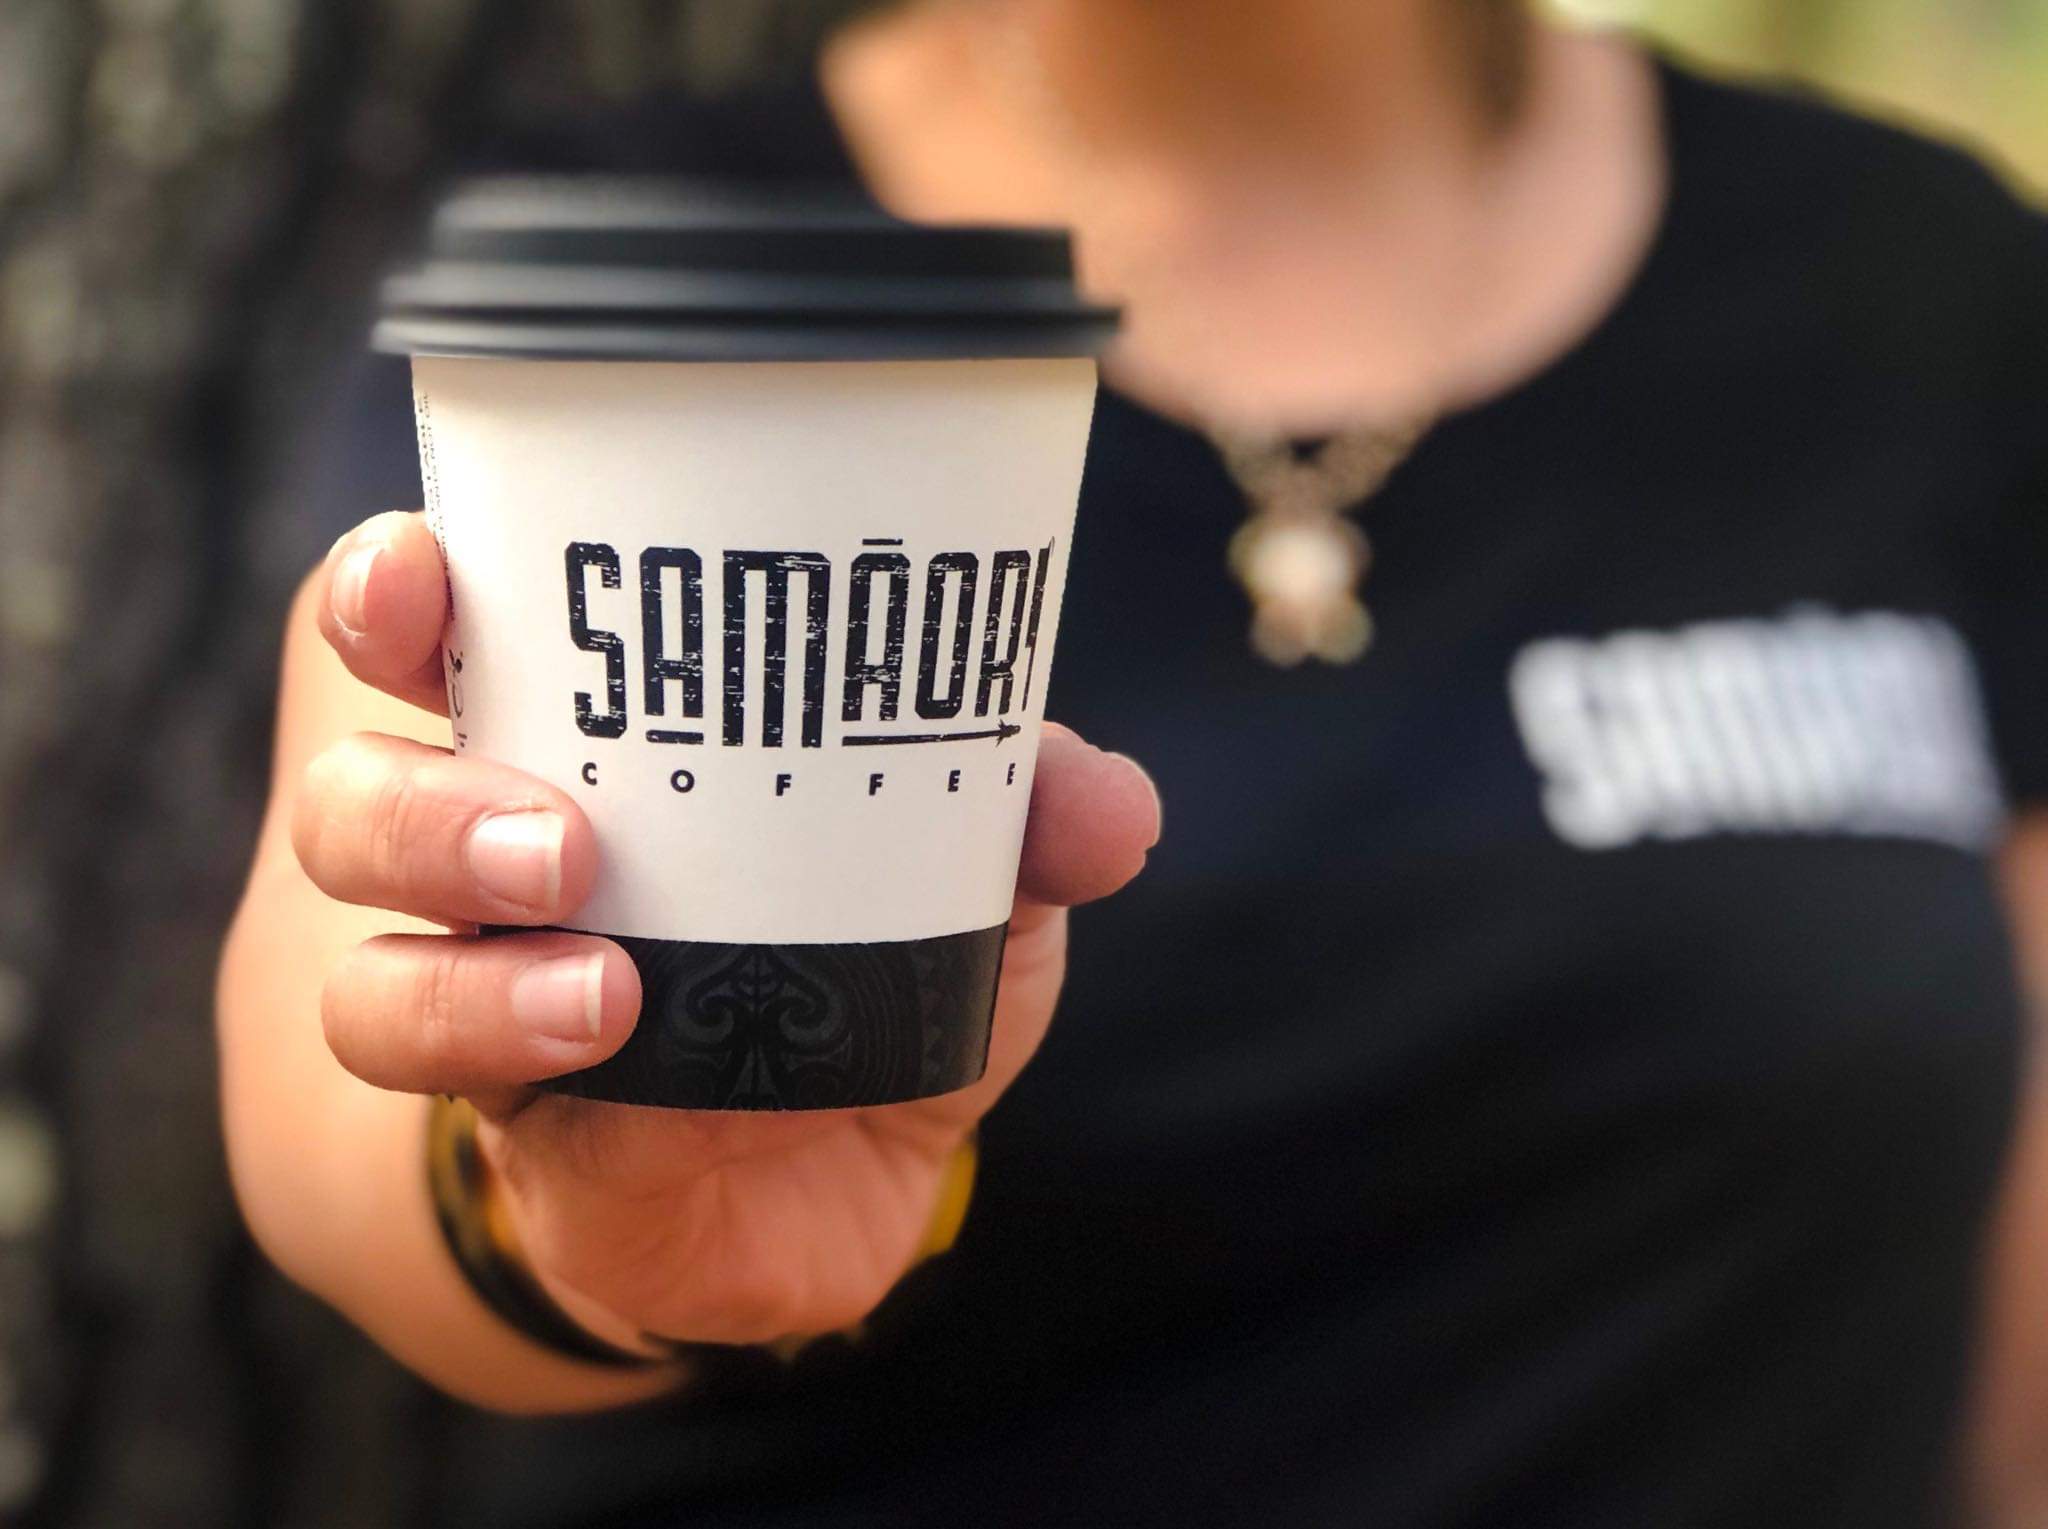 Samāori Coffee